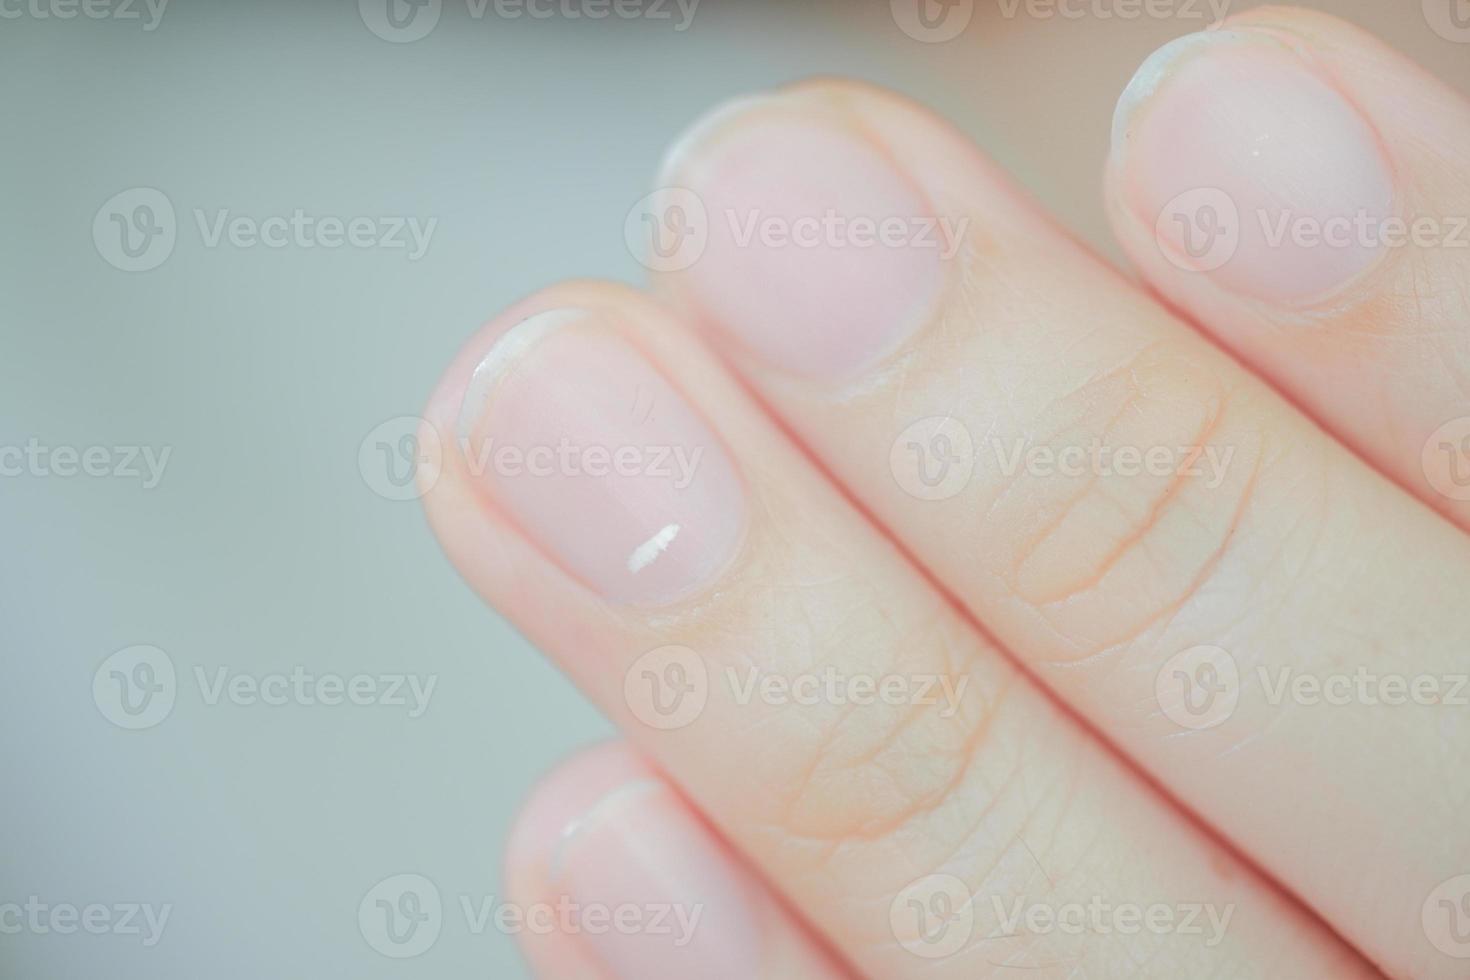 manchas blancas en las uñas llamadas leuconiquia revelan la aparición de problemas de salud. foto